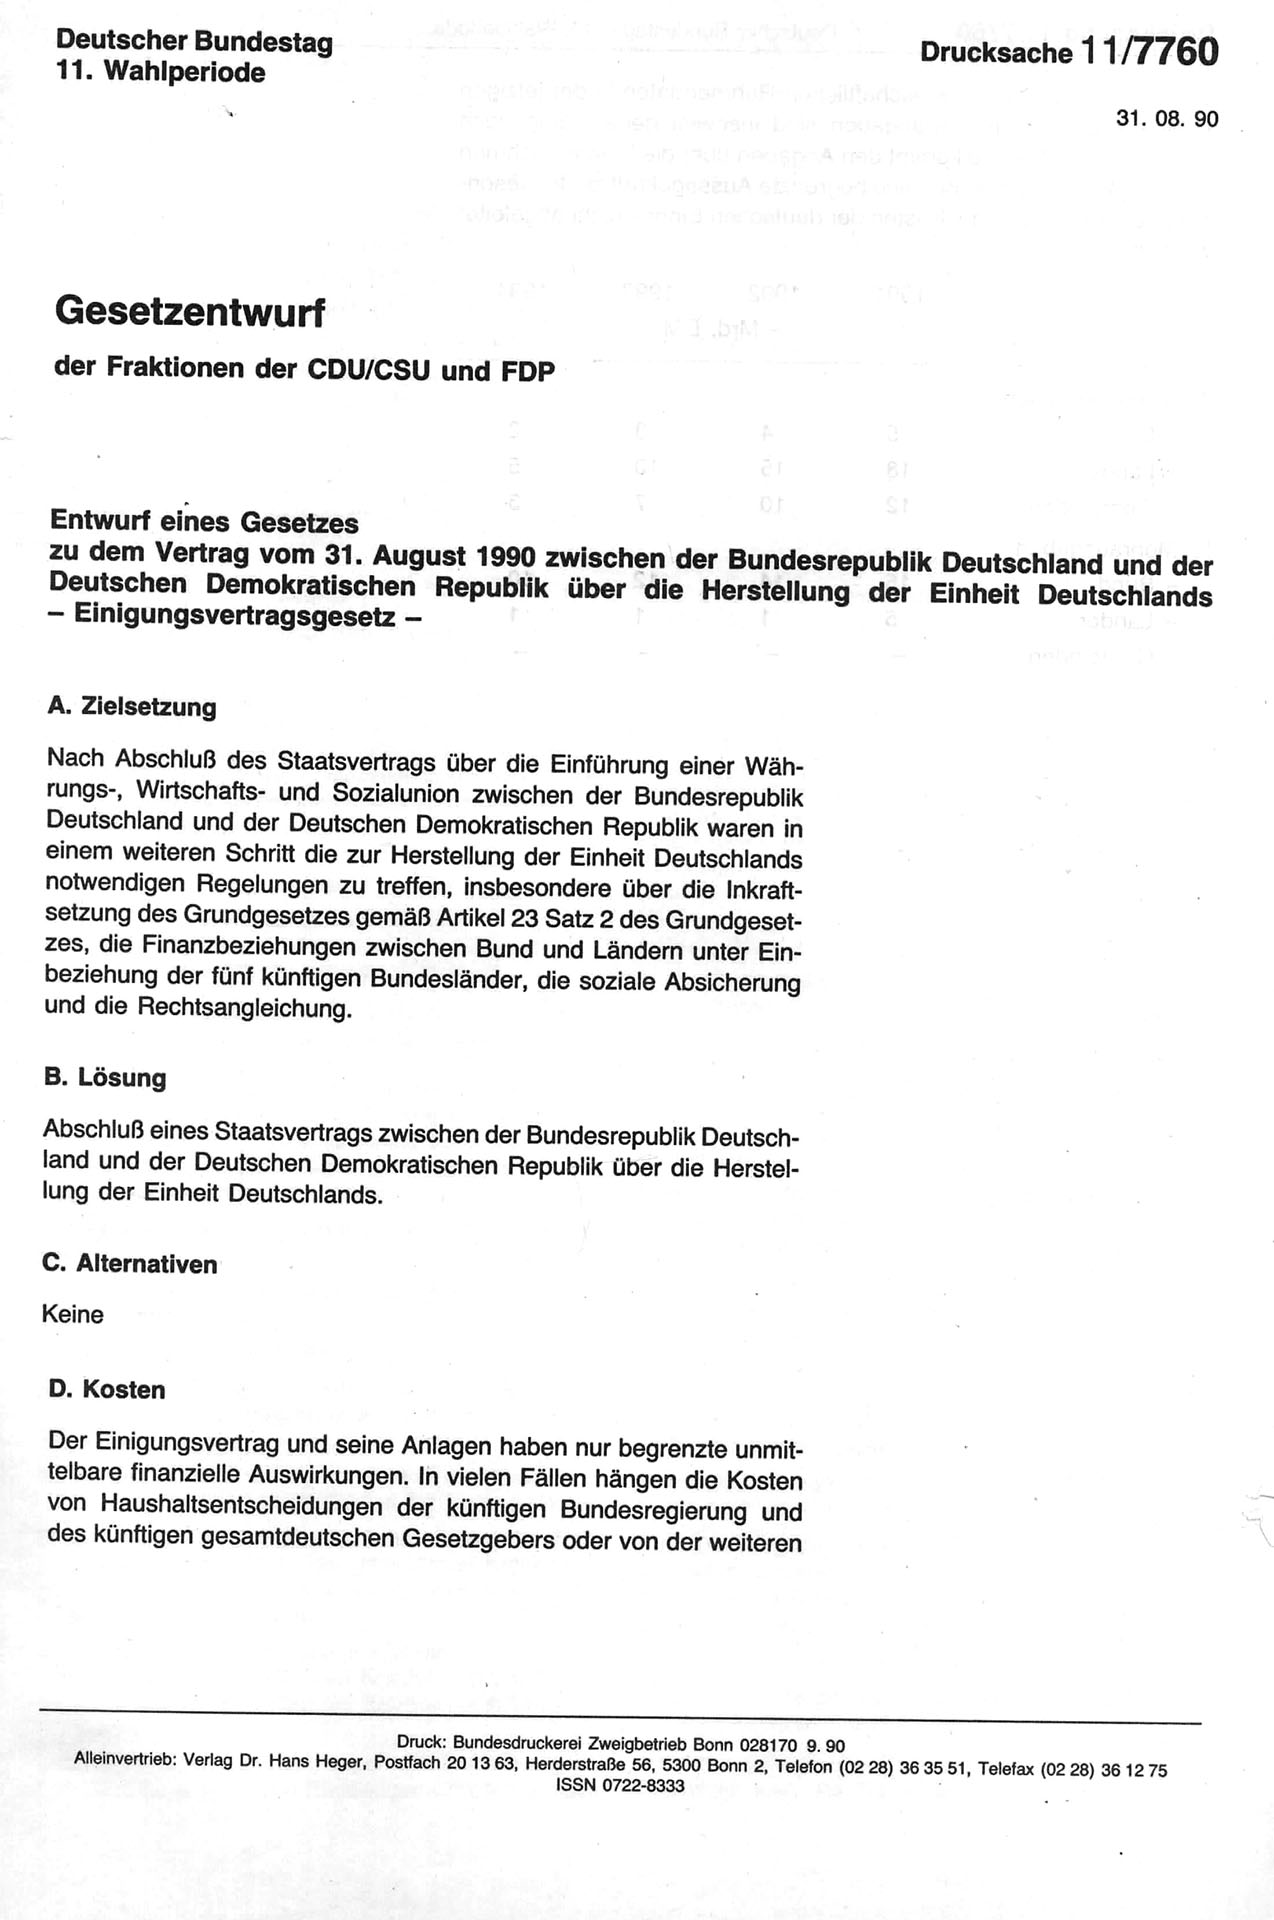 Entwurf eines Gesetzes zu dem Vertrag vom 31. August 1990 zwischen der BRD und der DDR über die Einheit Deutschlands - Deutscher Bundestag - Drucksache 11/7760